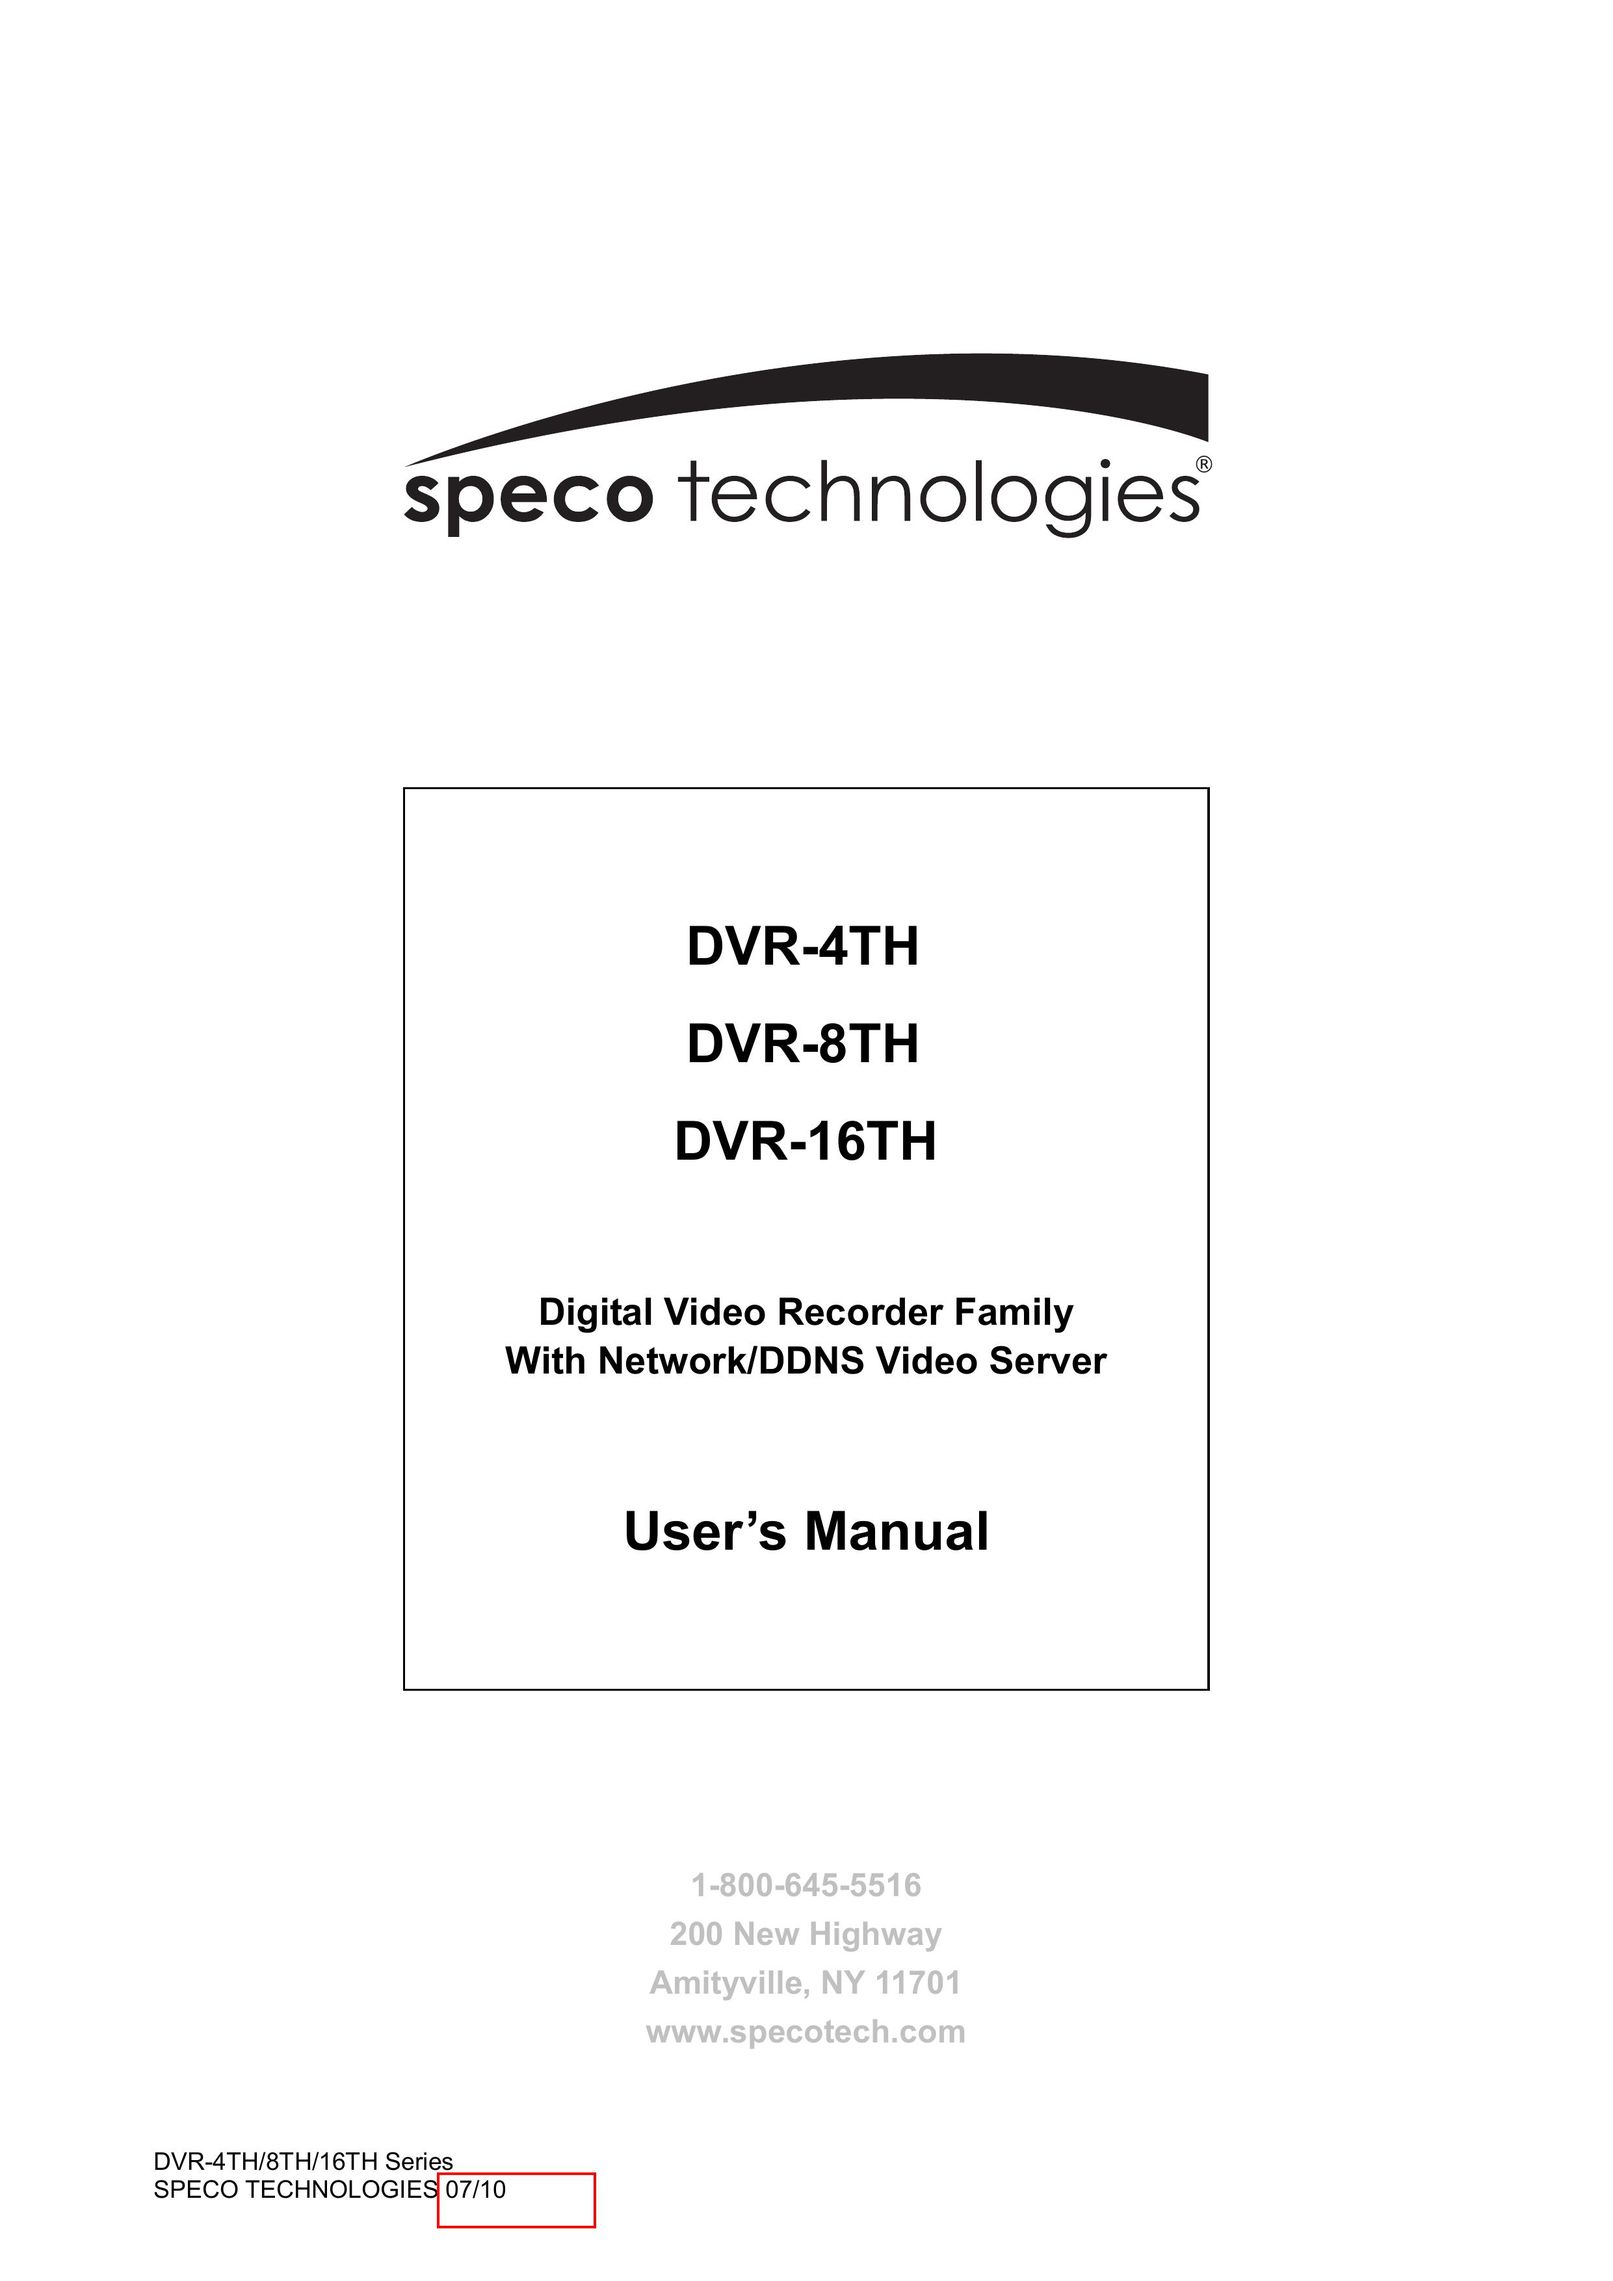 Samsung DVR-8TH DVR User Manual